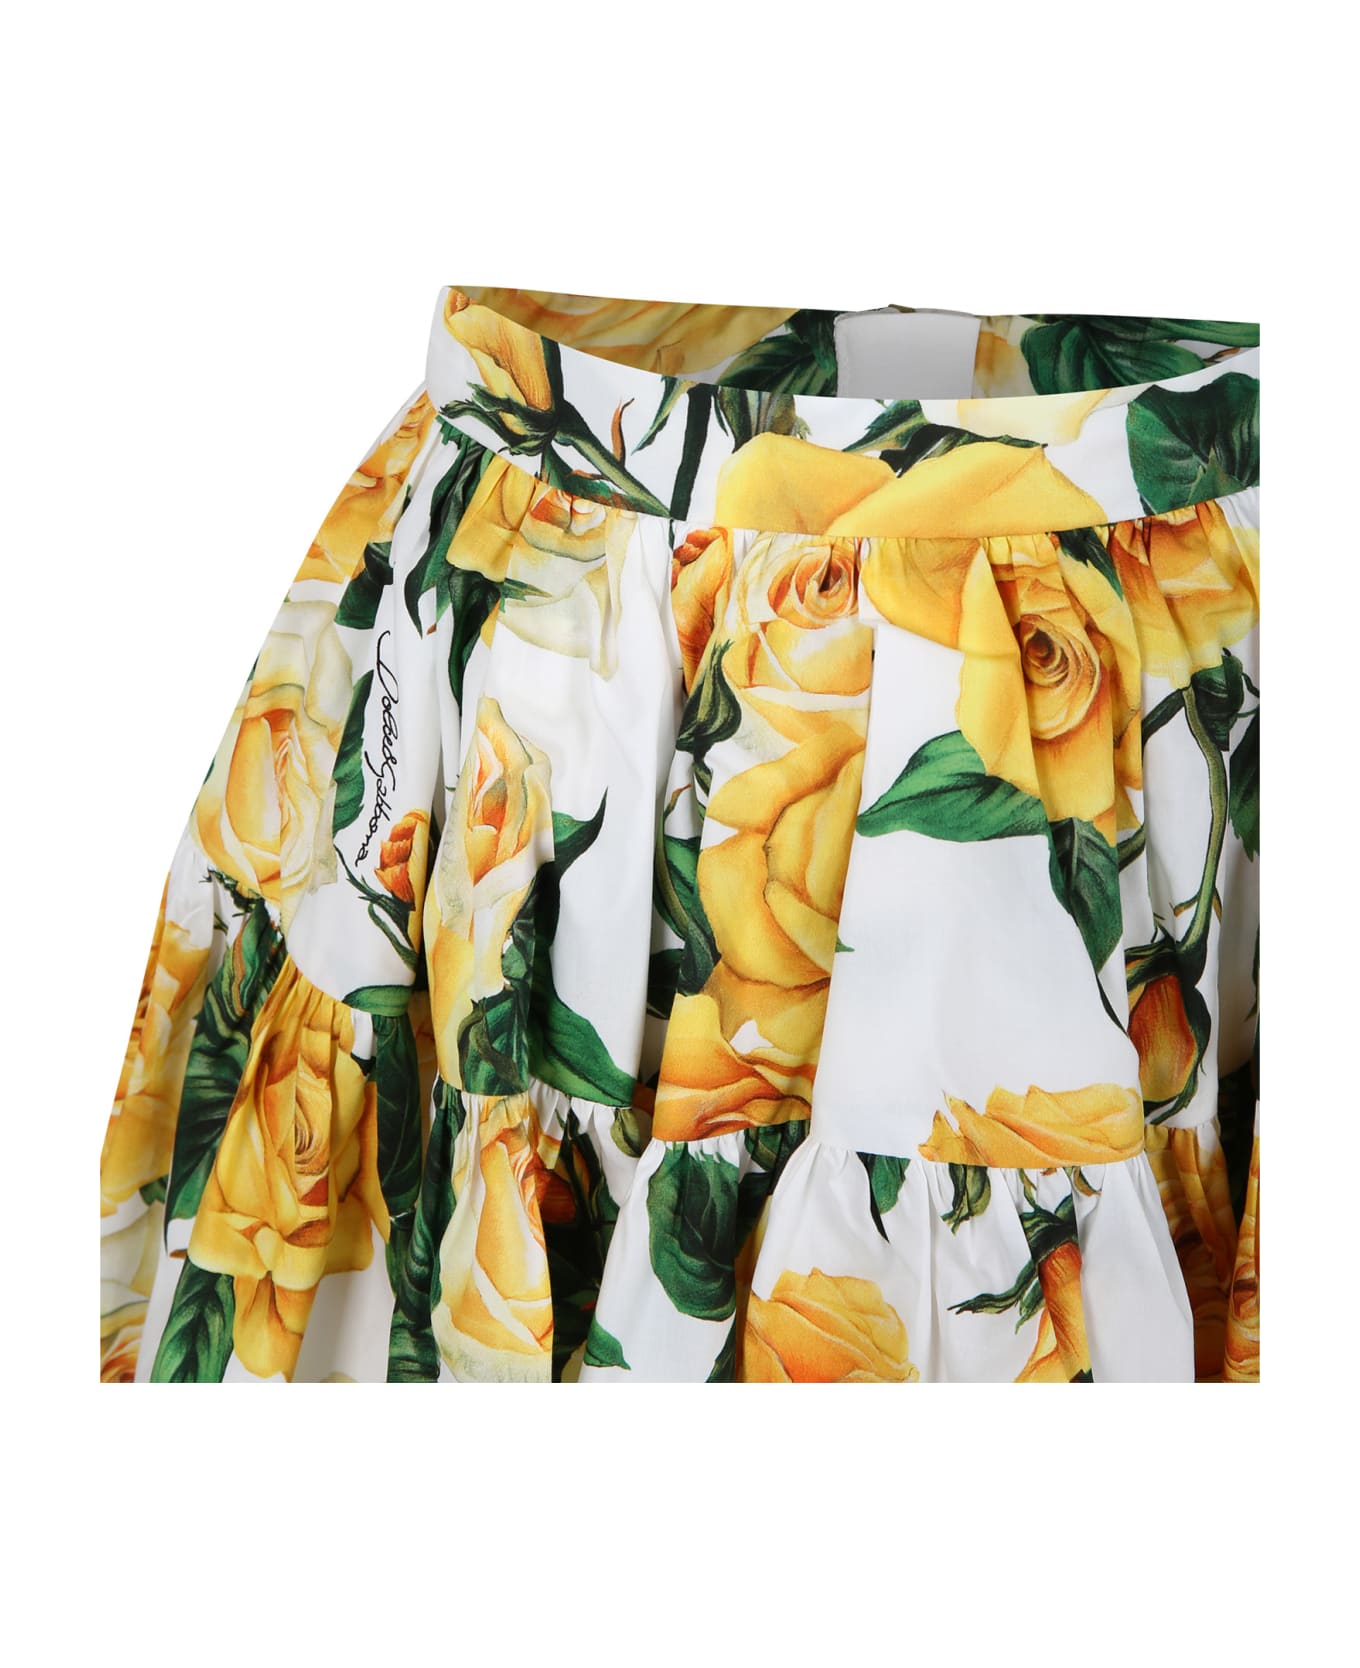 Dolce & Gabbana White Elegant Skirt For Girl With Flowering Pattern - MULTICOLOR